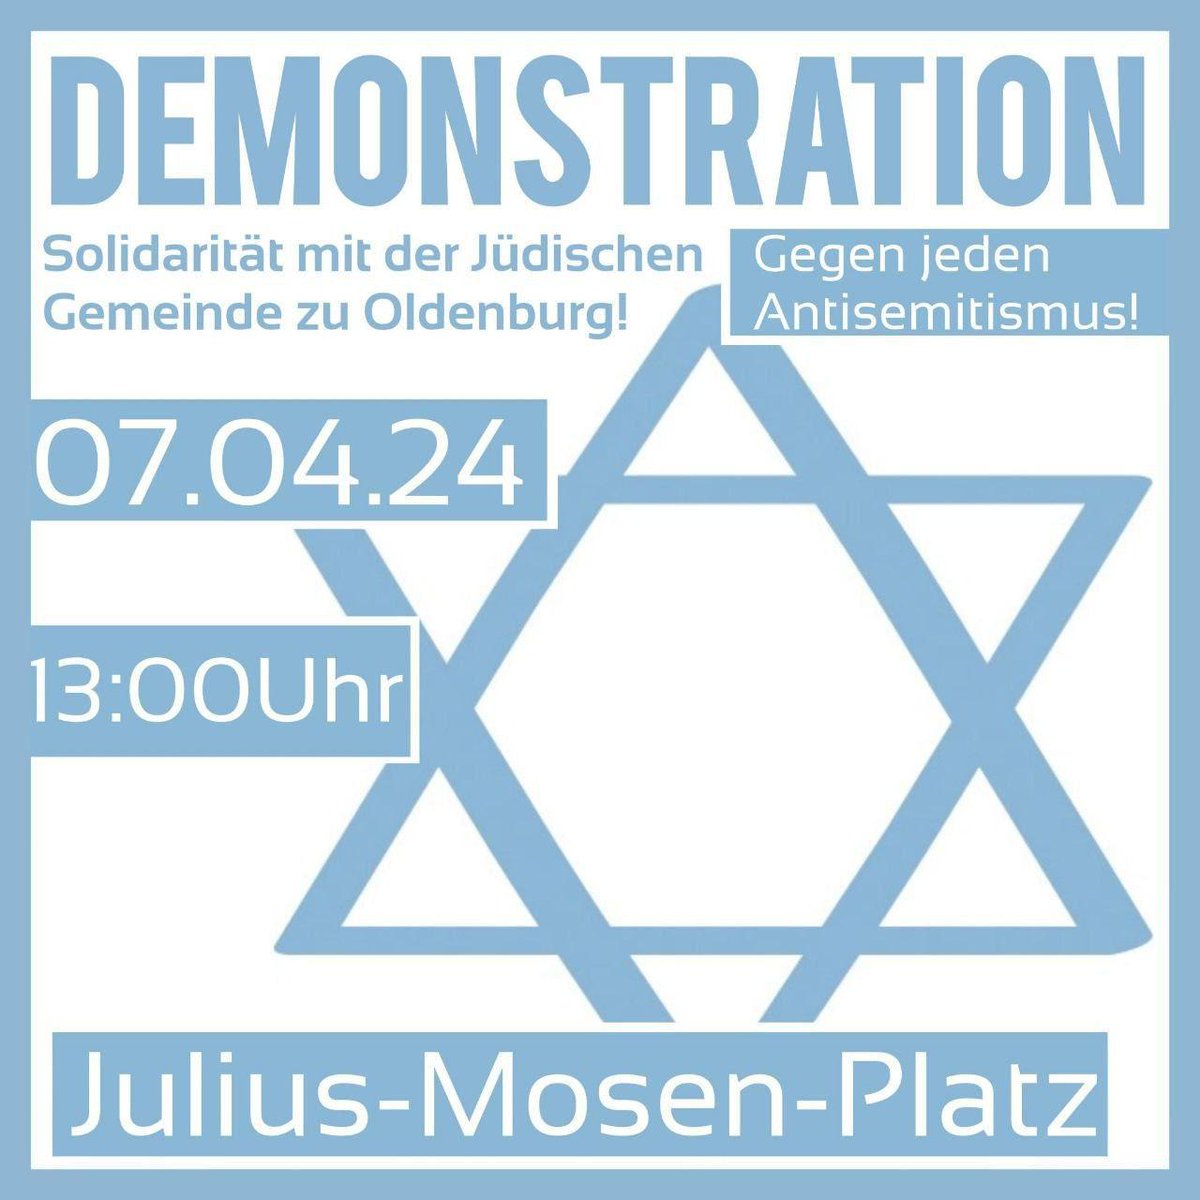 Morgen 13 Uhr #Oldenburg 
#GegenjedenAntisemitismus #Niewiederistjetzt